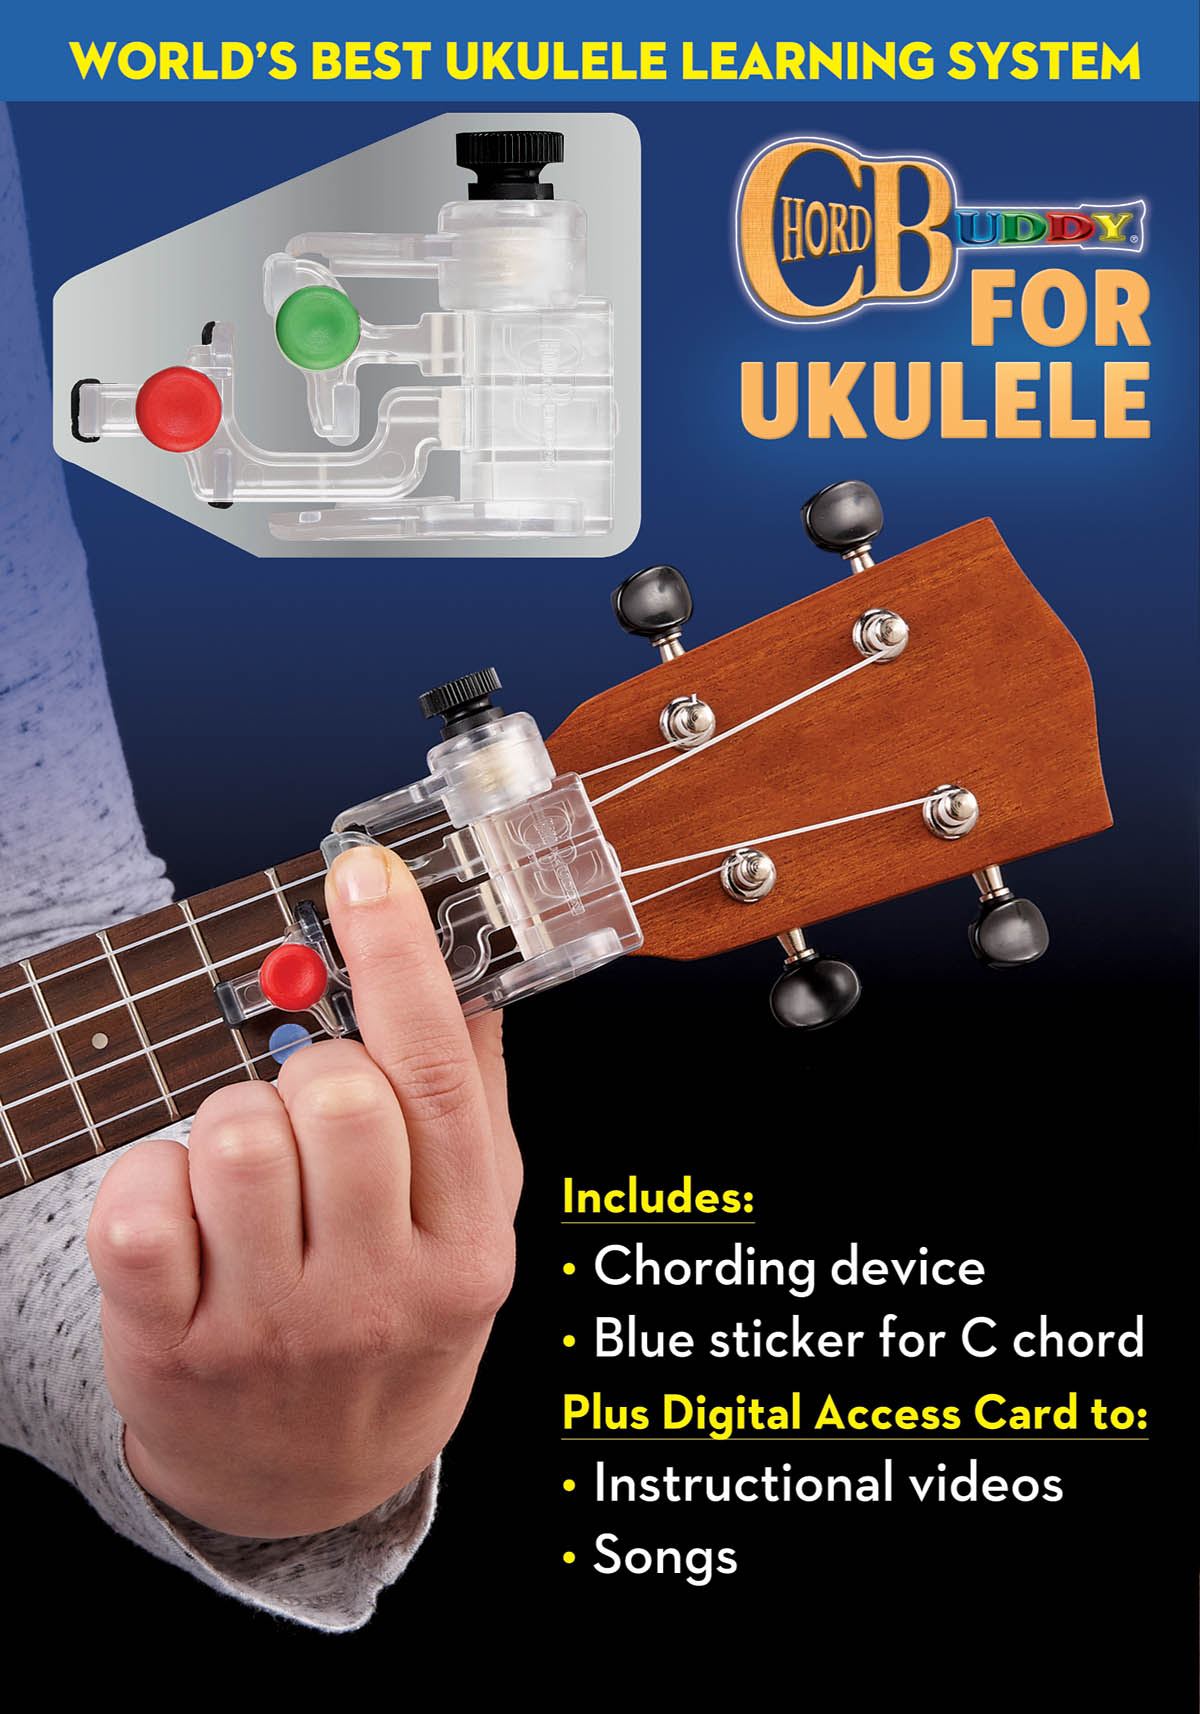 ChordBuddy for Ukulele - Complete Learning Package: Ukulele: Instrumental Tutor